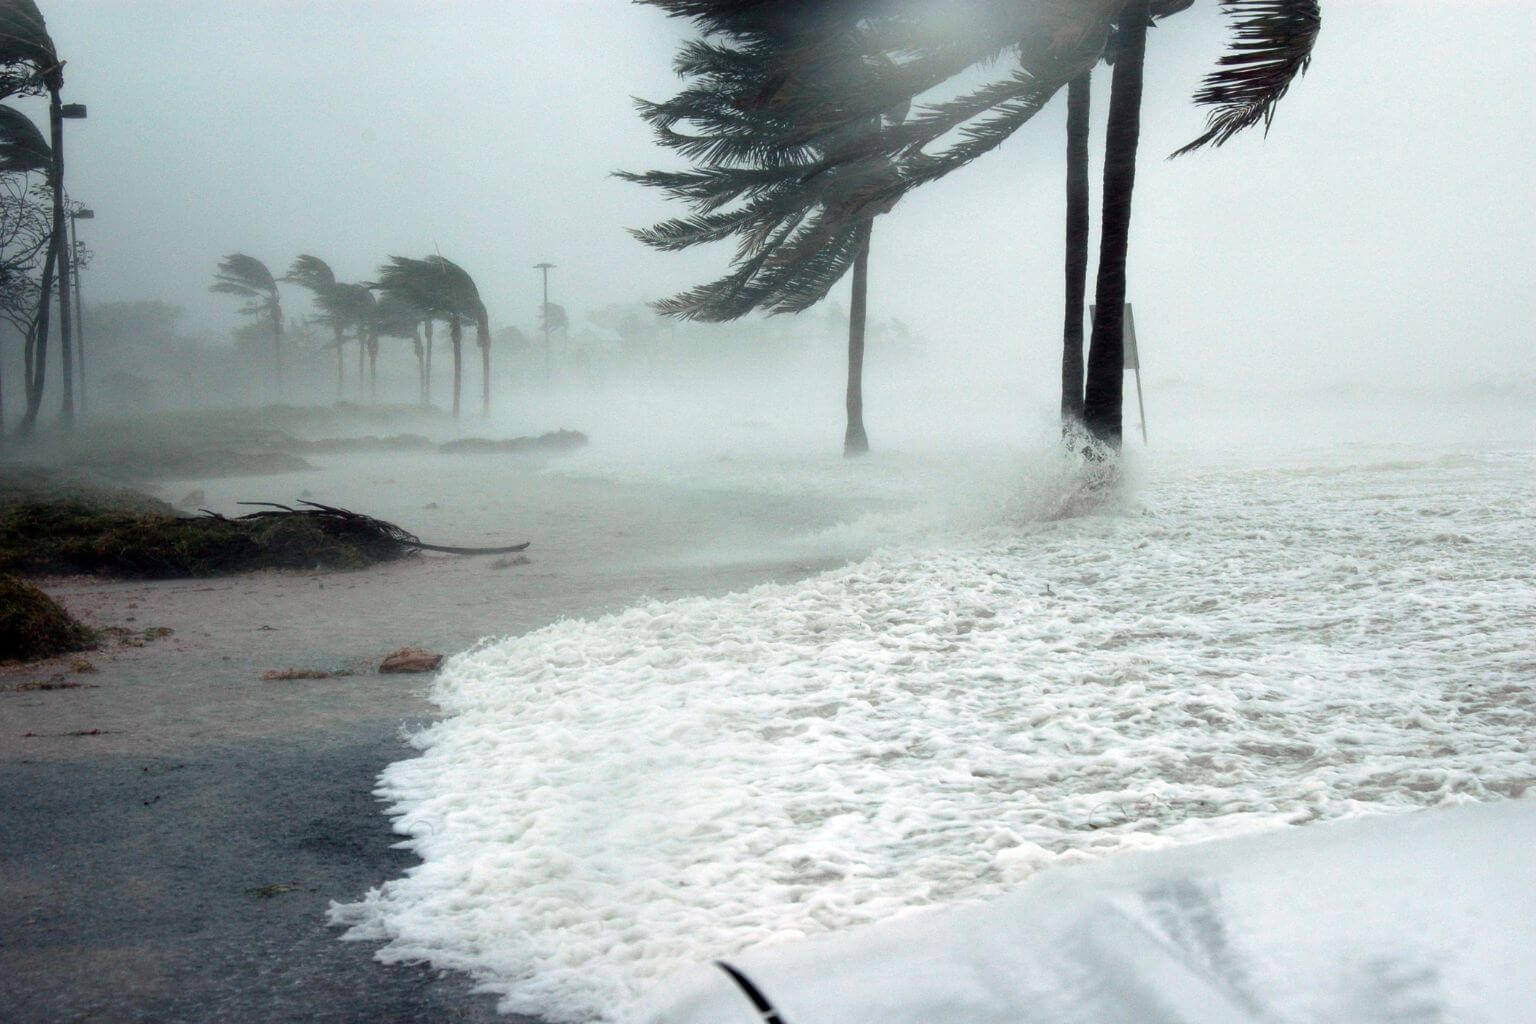 Hurricane season in Cancun